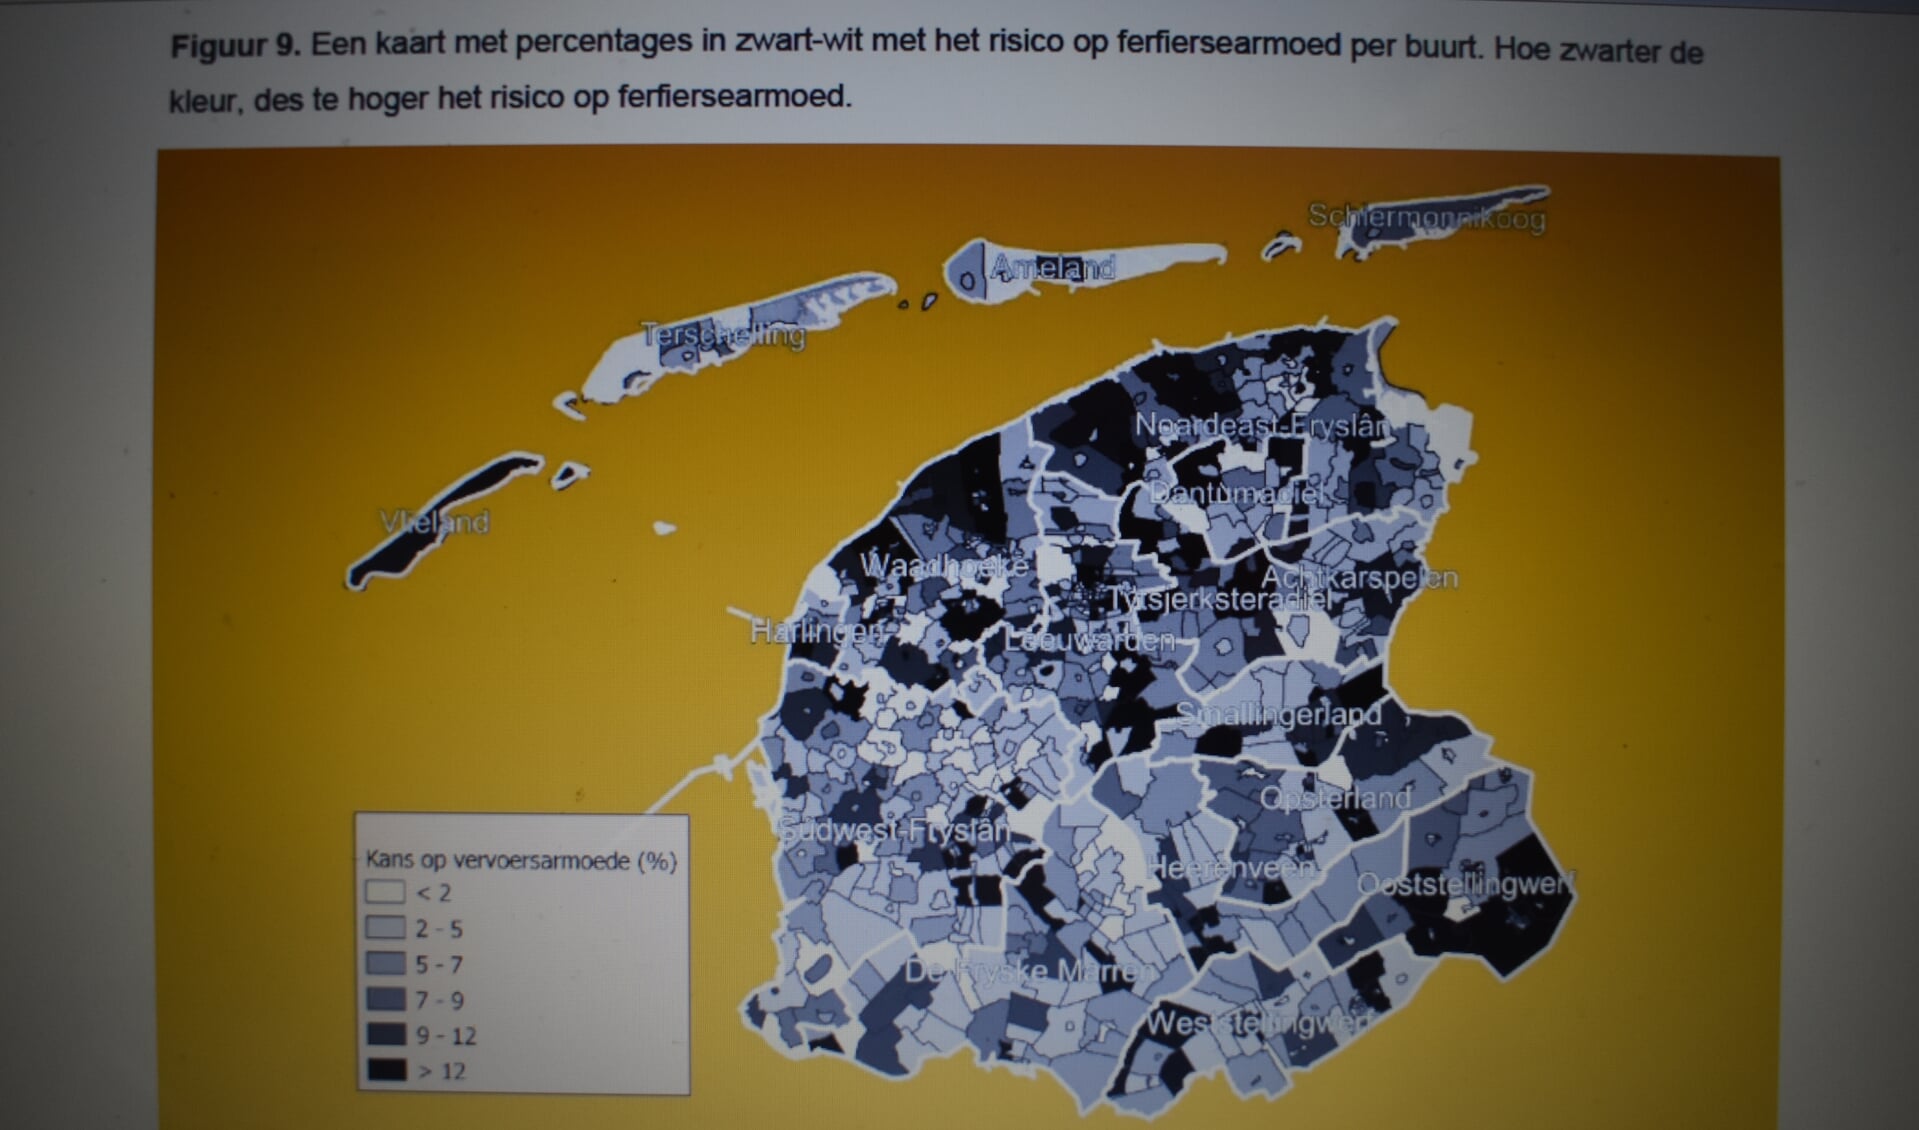 Kans op 'vervoersarmoede' op buurtniveau in Fryslân: hoe donkerder, hoe hoger het risico.